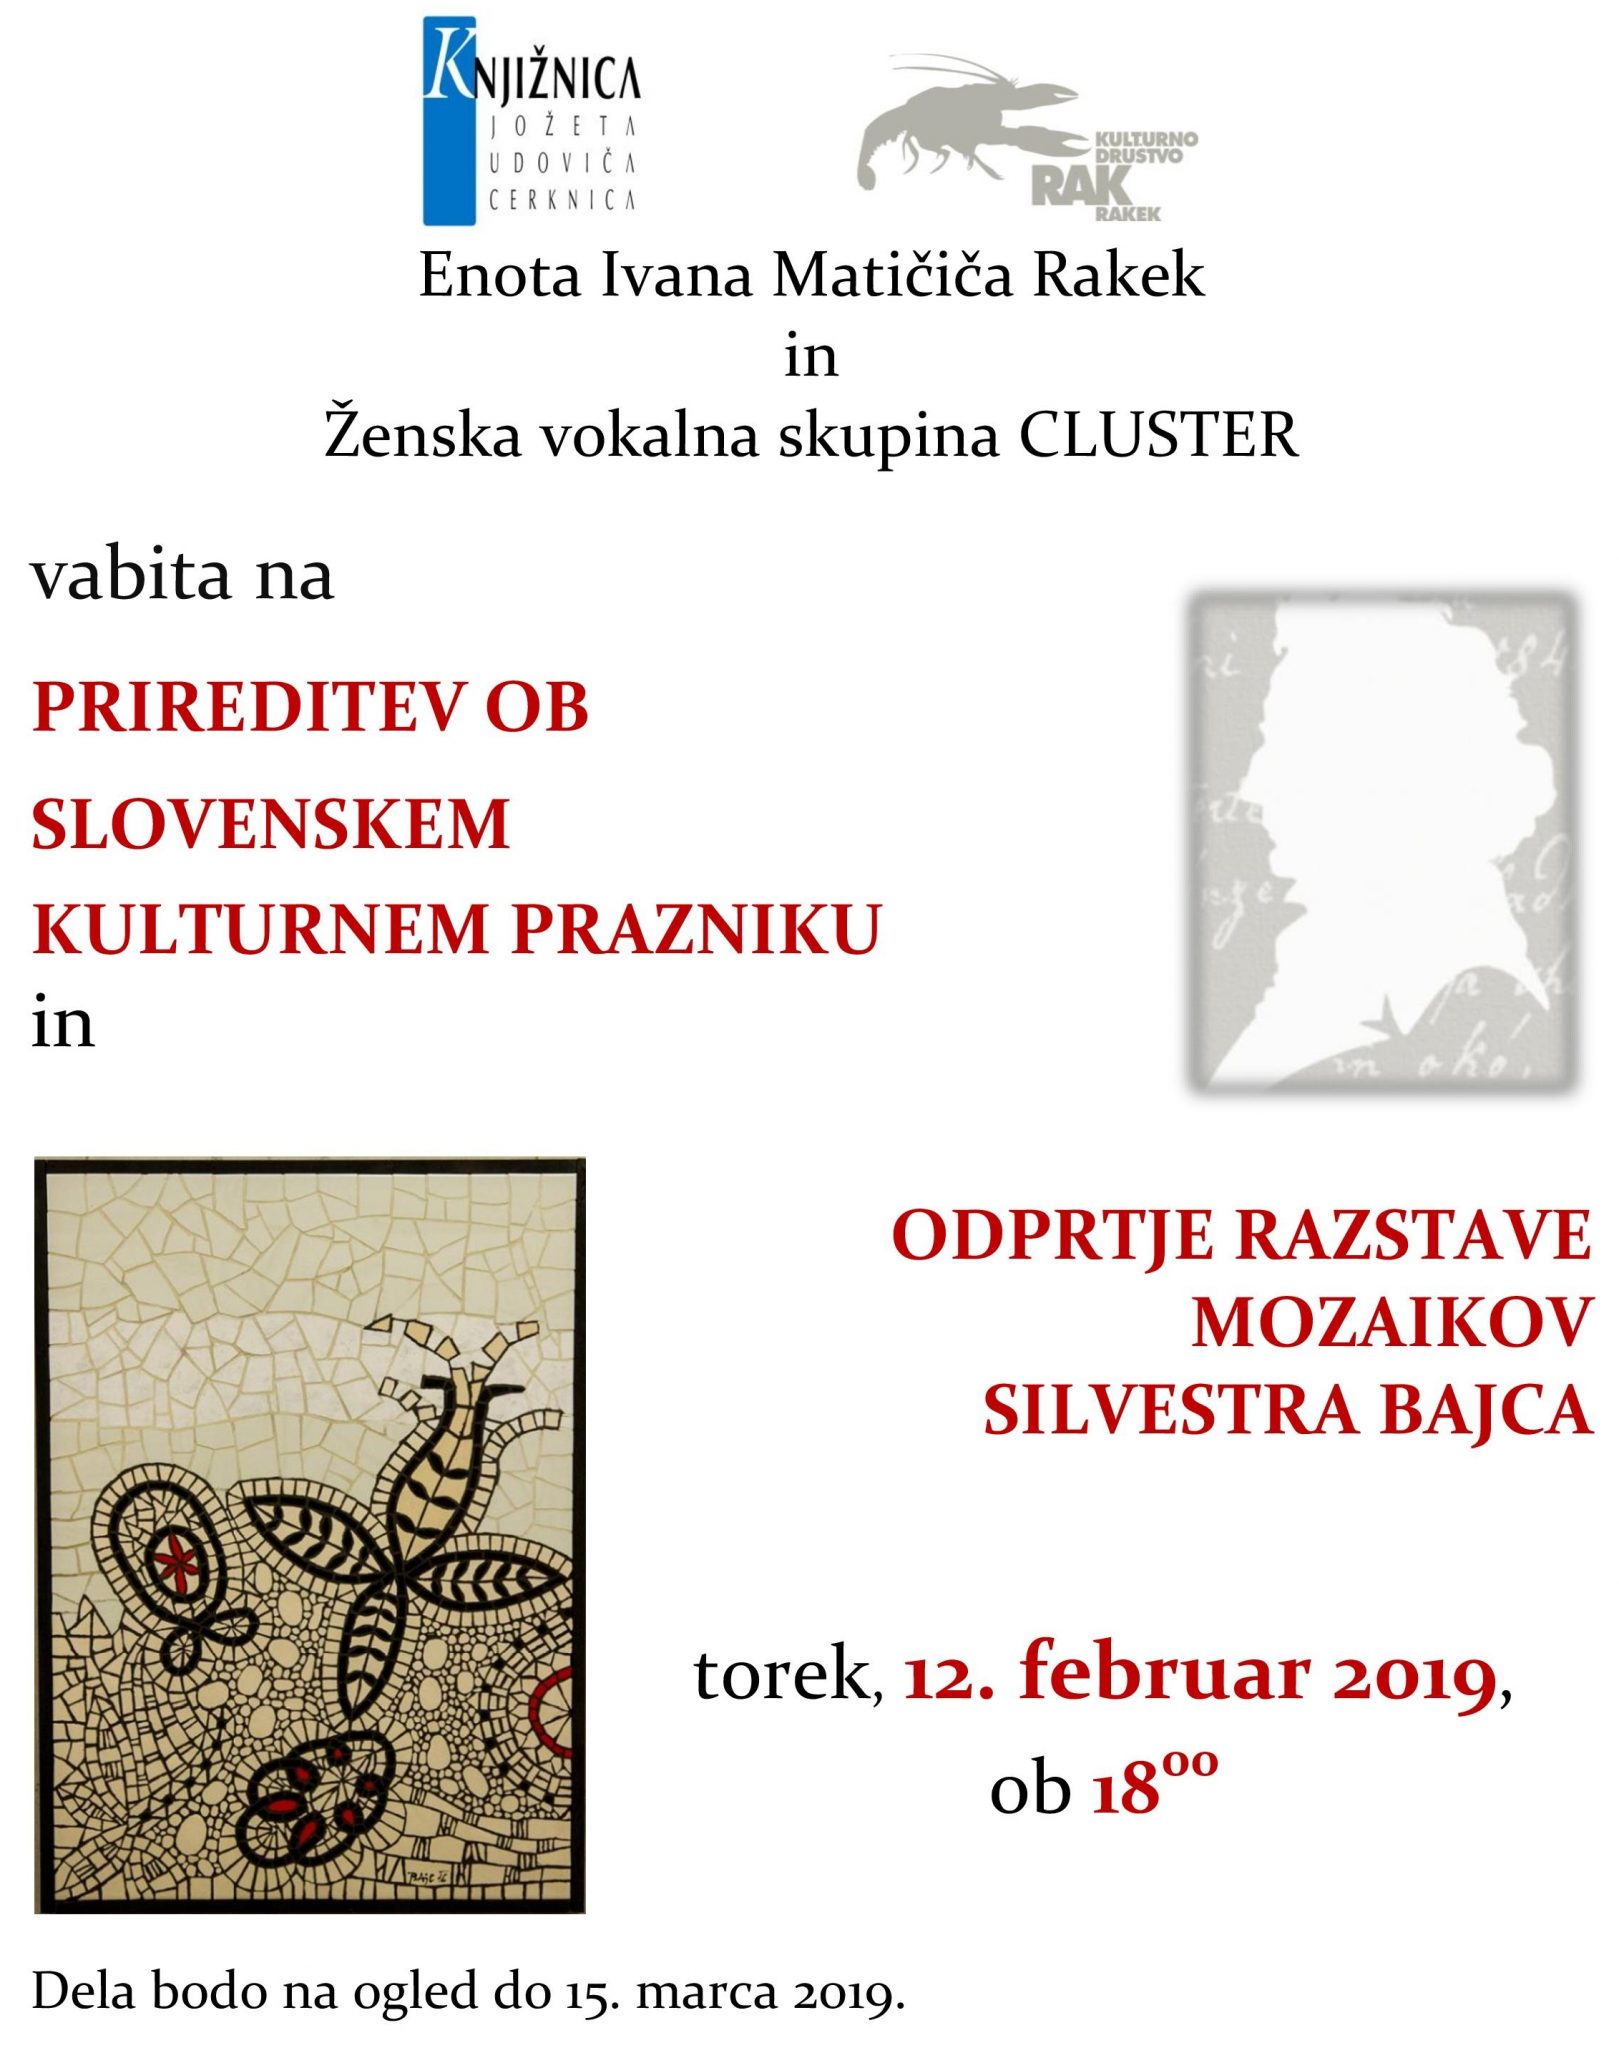 cover 4 - Prireditev ob slovenskem kulturnem prazniku in odprtje razstave mozaikov Silvestra Bajca